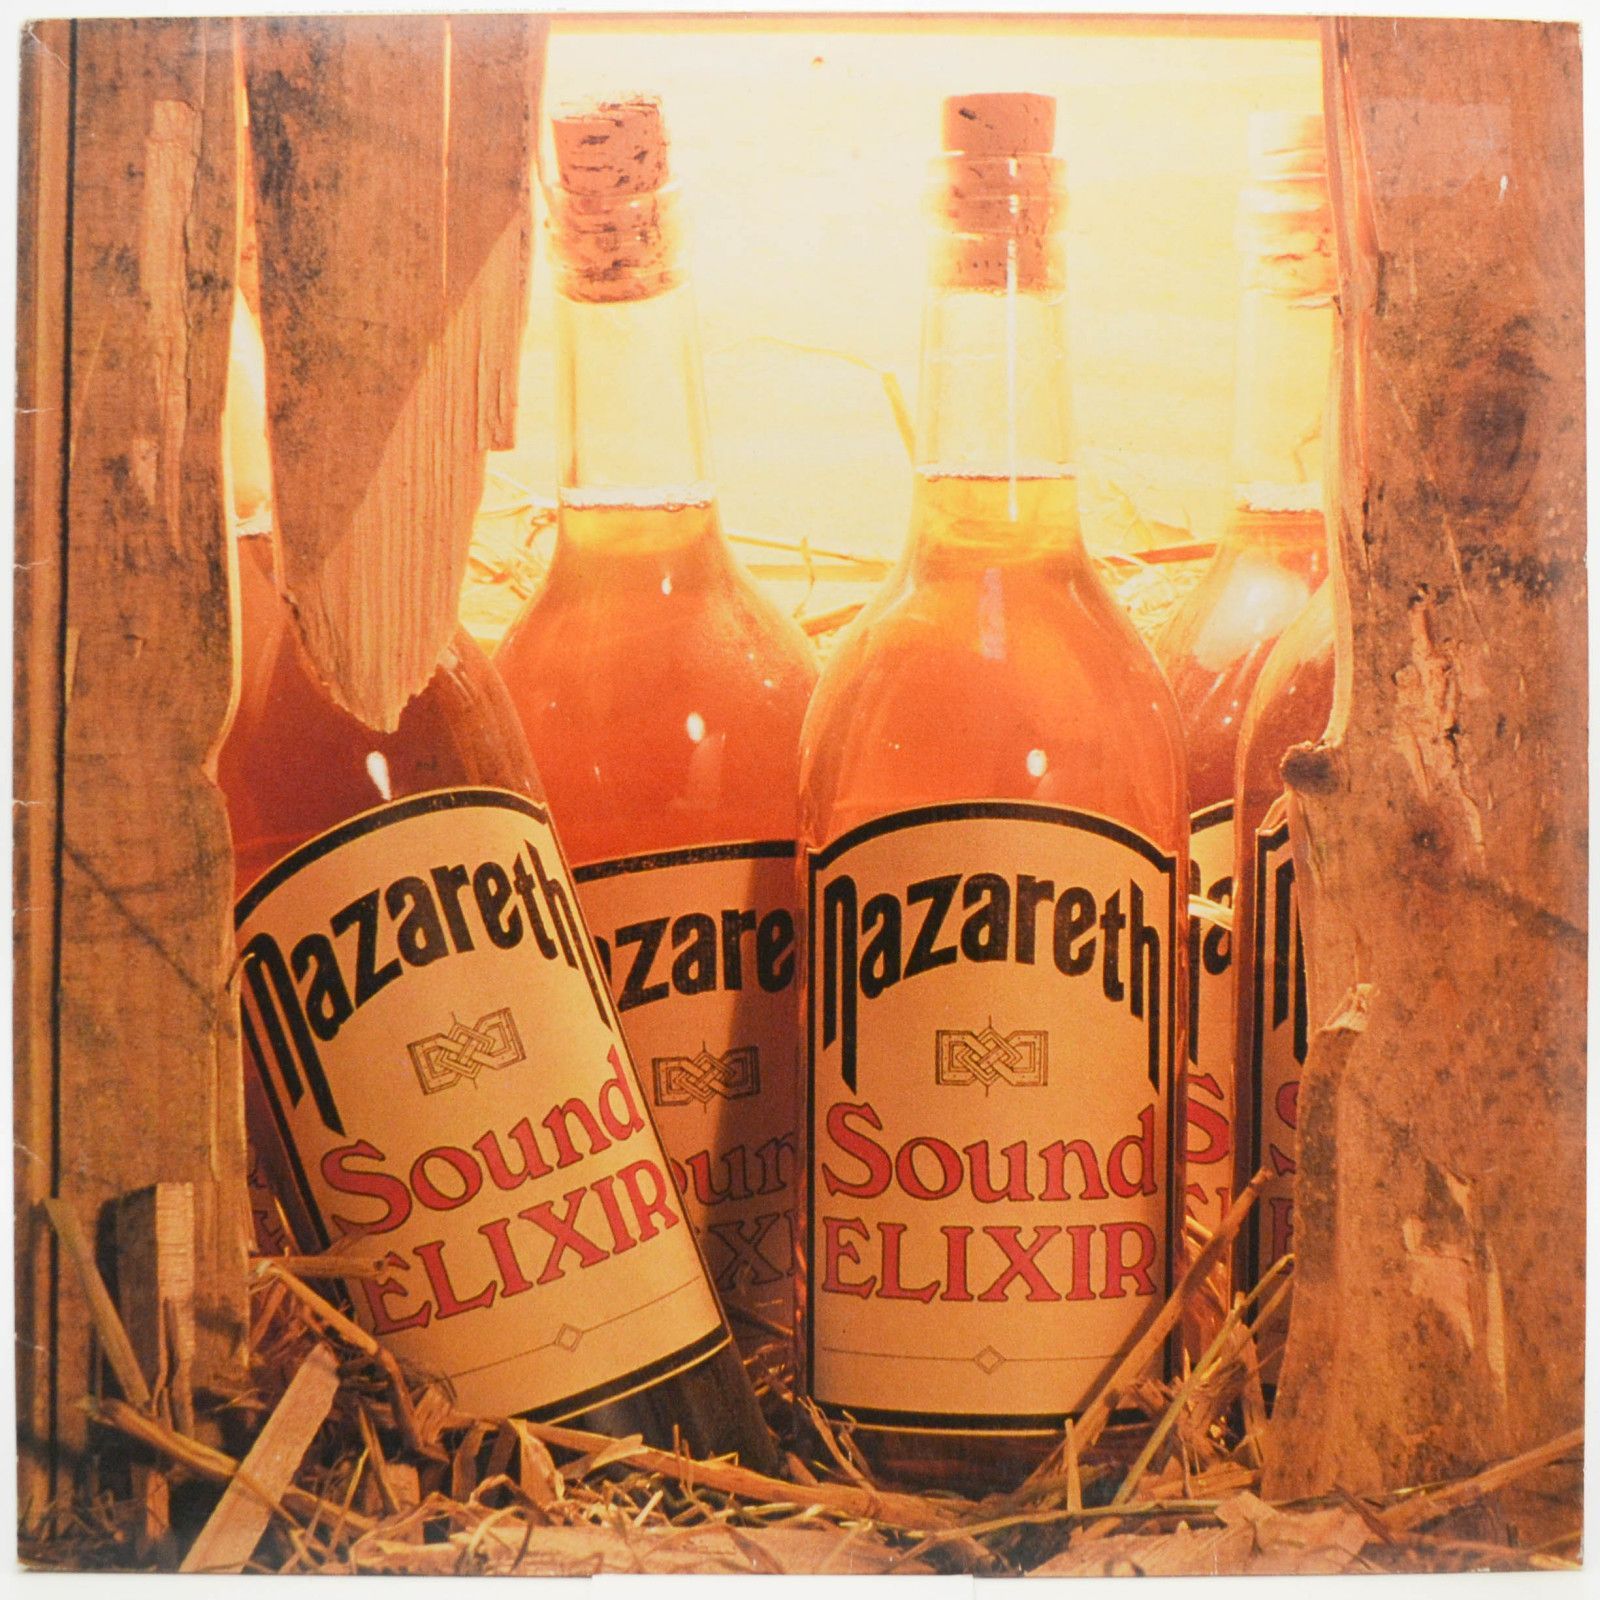 Nazareth — Sound Elixir, 1983